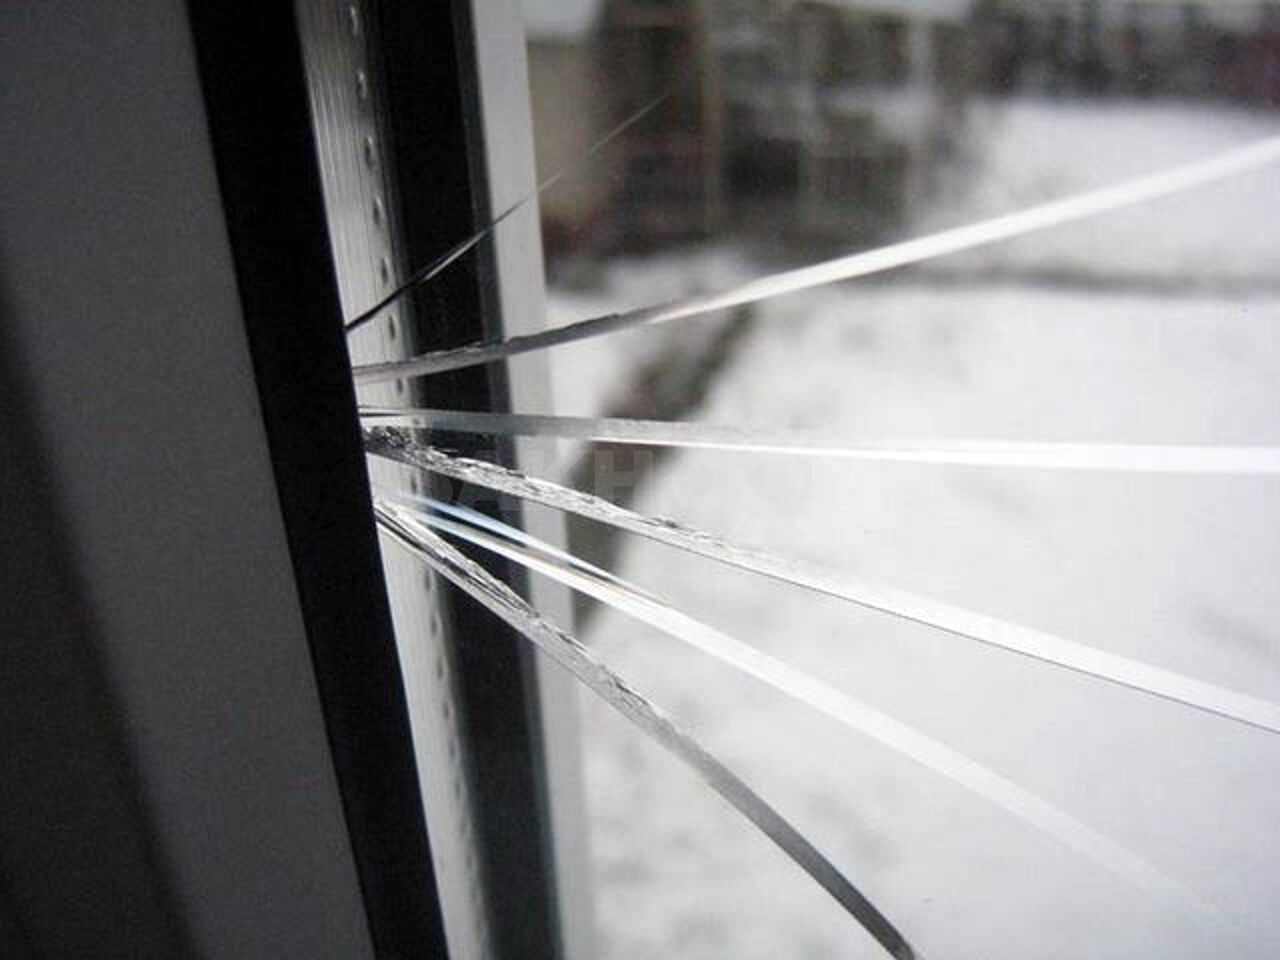 Почему лопнуло стекло. Термошок стекла в стеклопакете. Треснул стеклопакет. Лопнул стеклопакет. Разбитое стекло пластиковое окно.